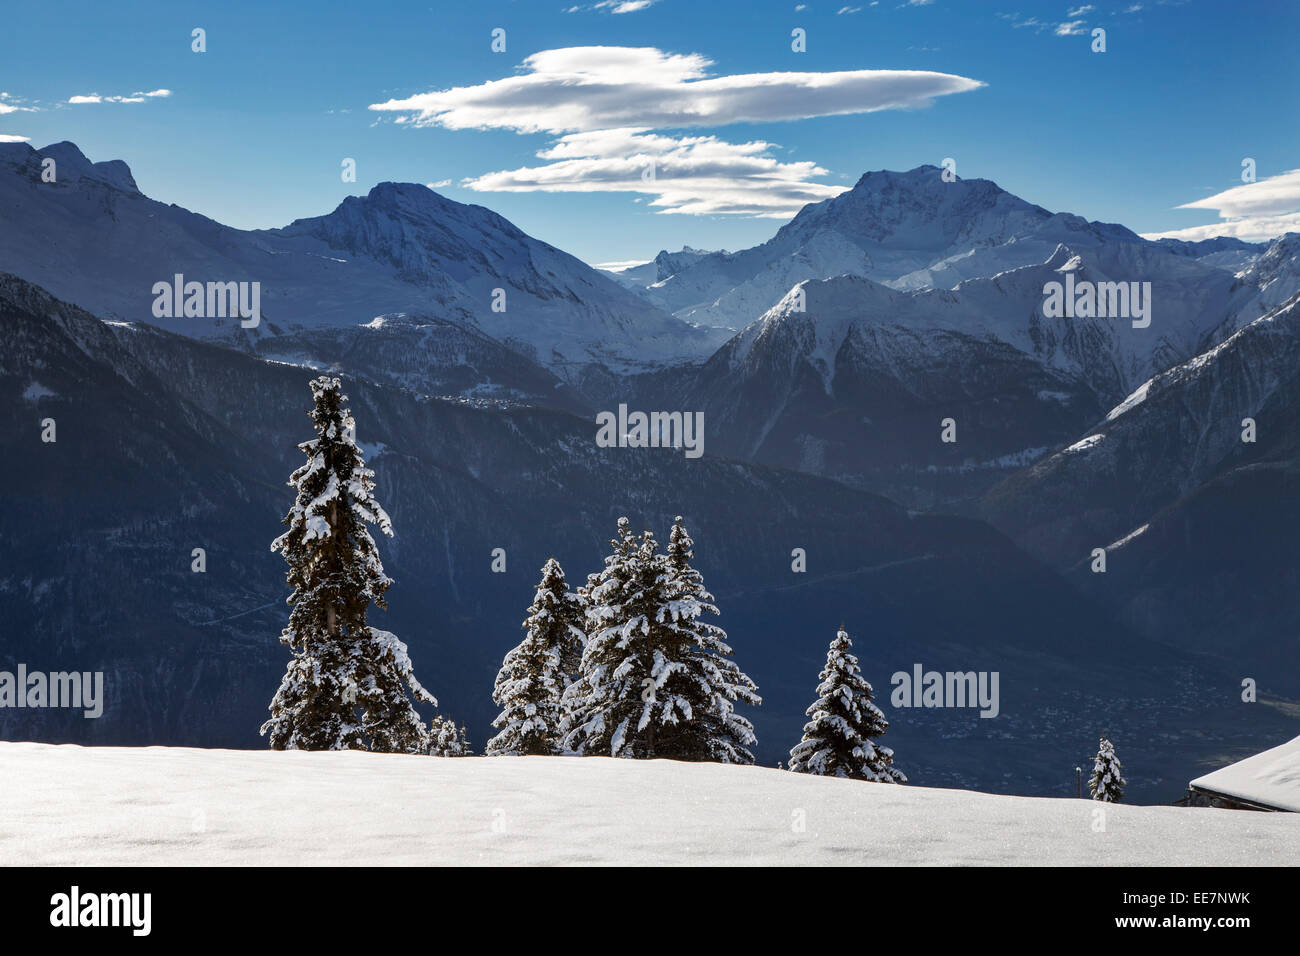 Montagnes de Riederalp et épinettes couvertes de neige en hiver dans les Alpes Suisses, Valais / Valais, Suisse Banque D'Images